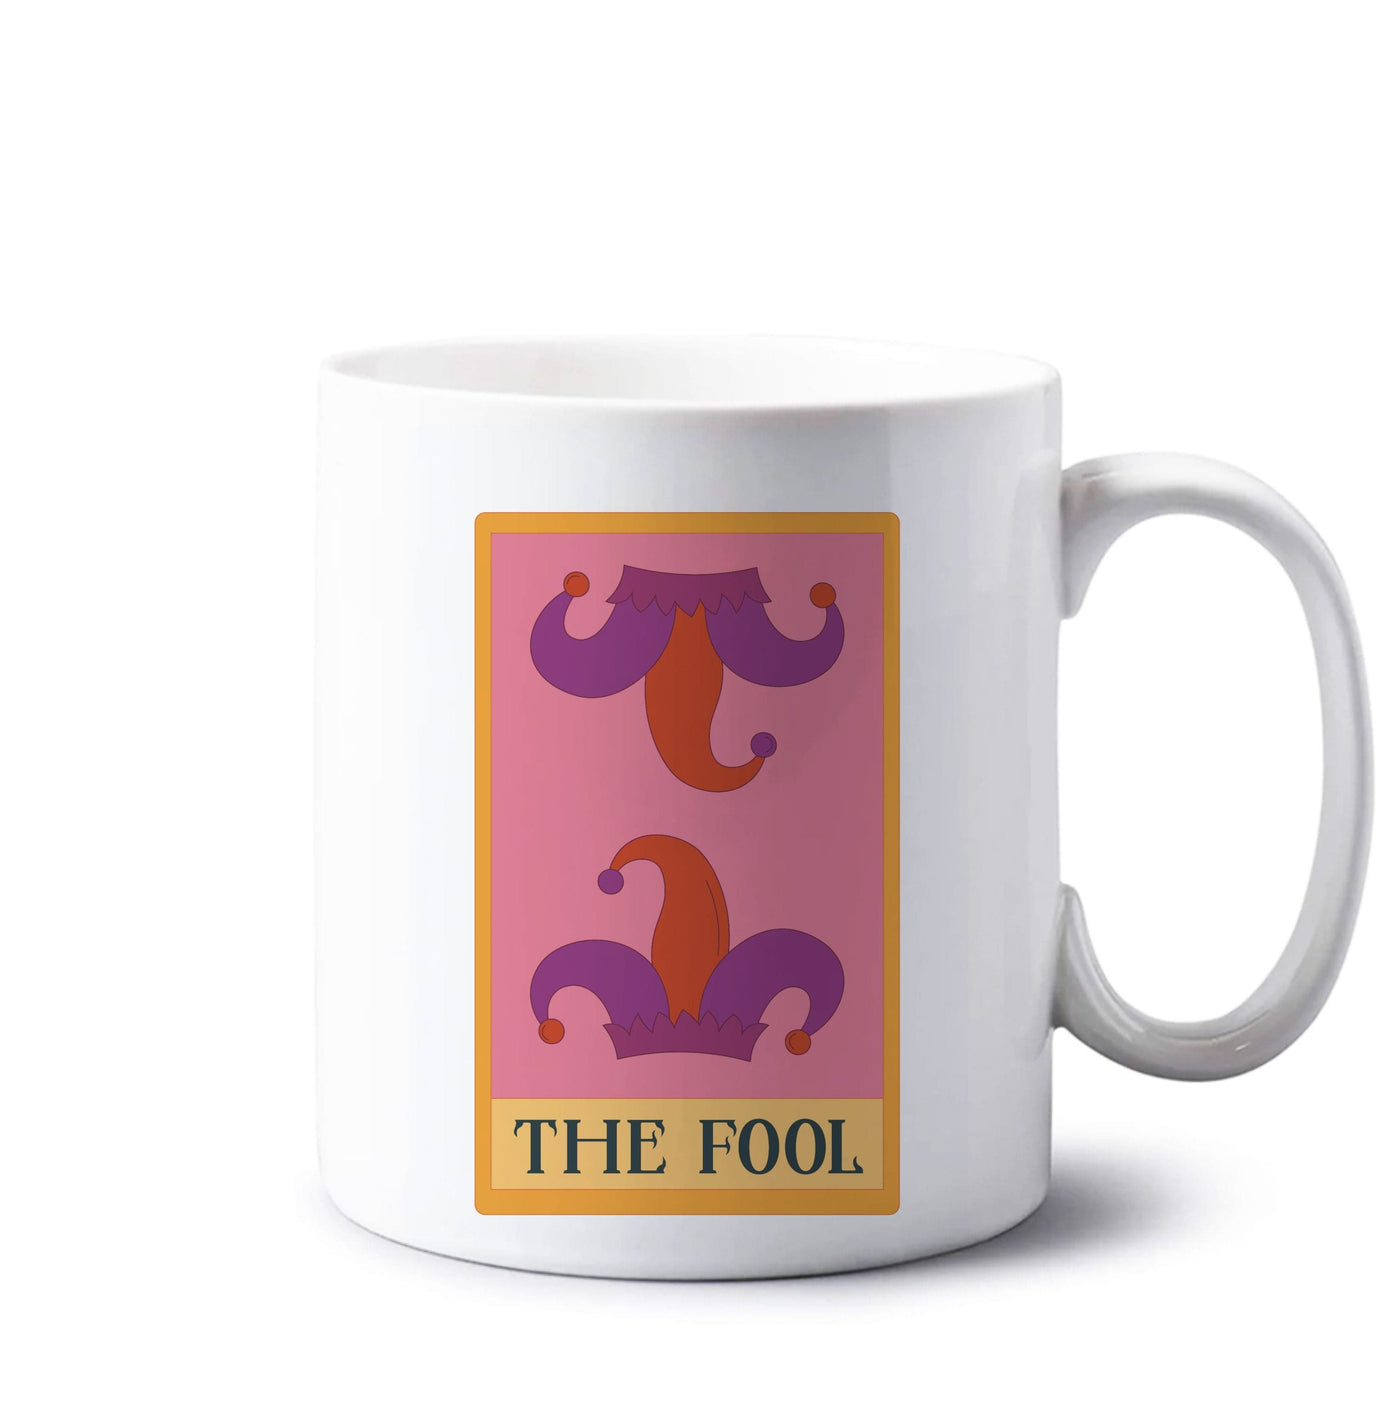 The Fool - Tarot Cards Mug